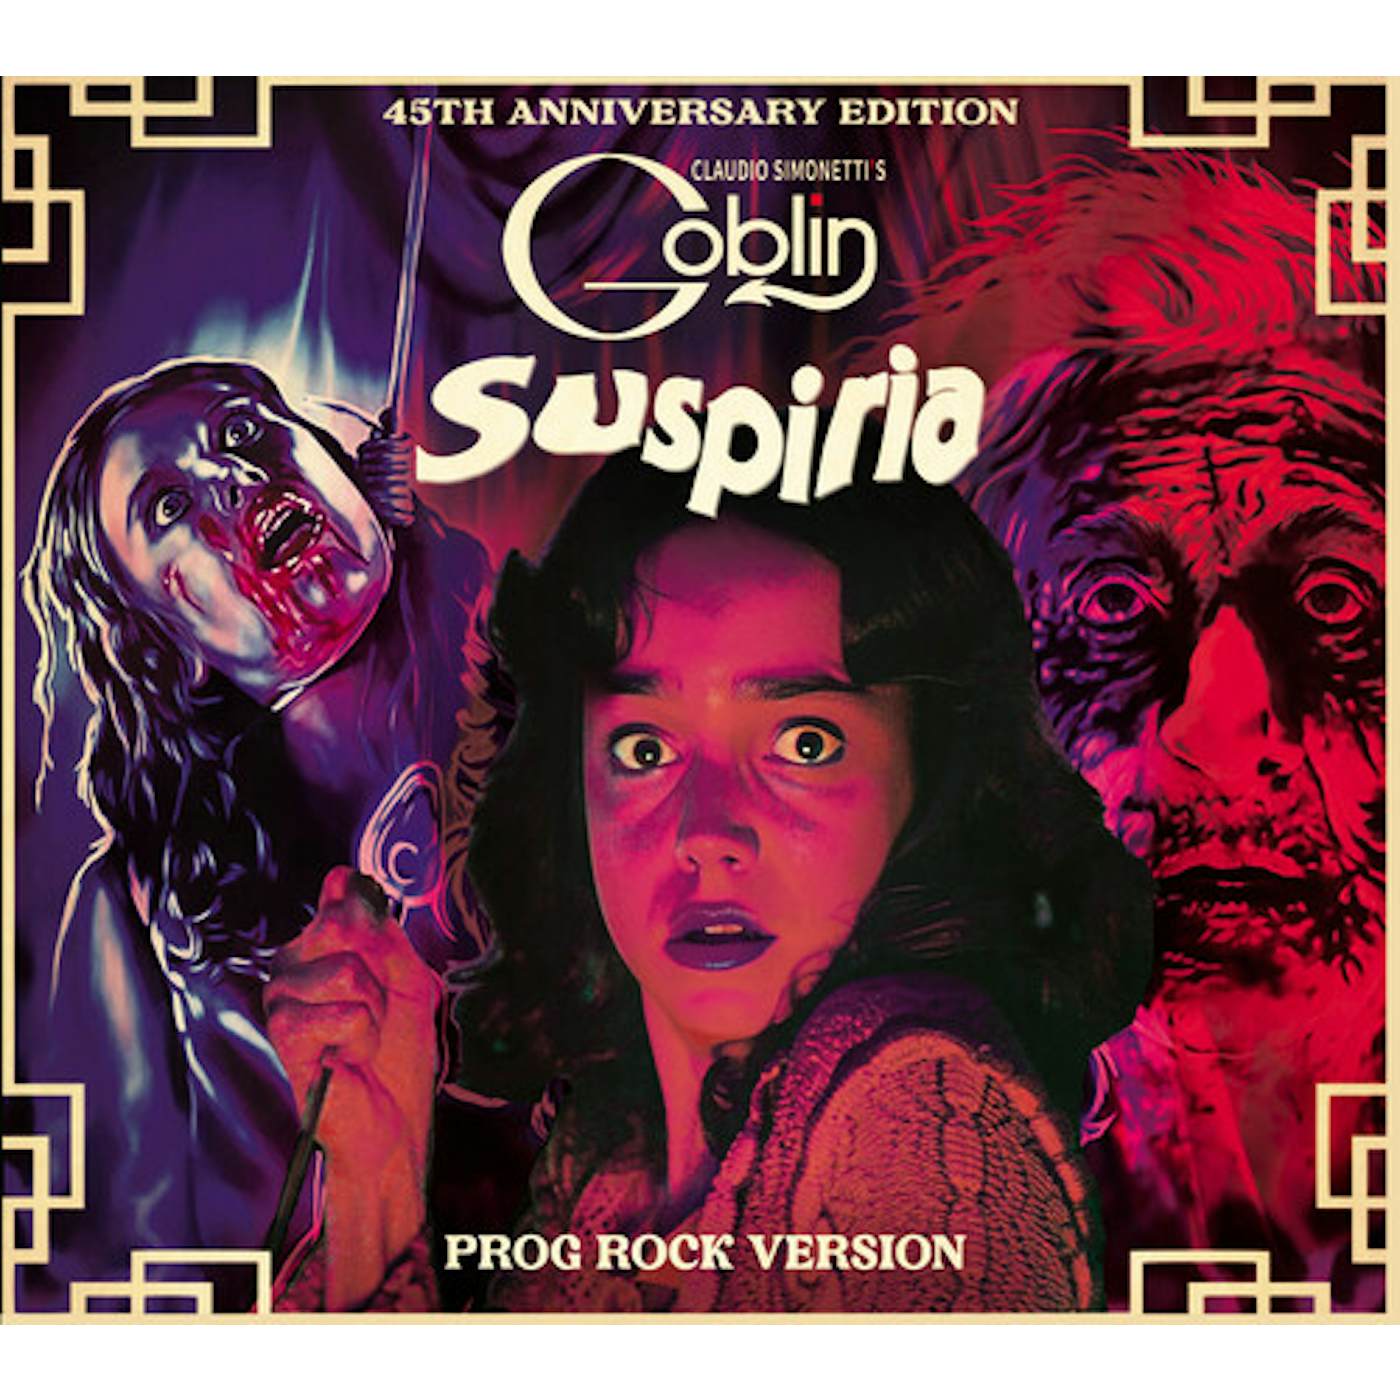 Claudio Simonetti's Goblin SUSPIRIA - Original Soundtrack CD